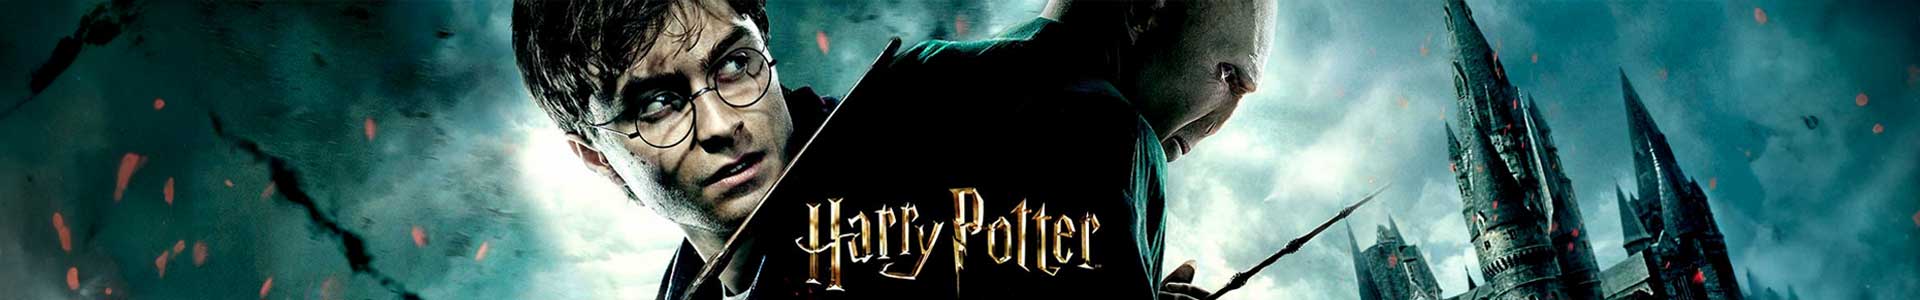 Baguette magique Harry Potter avec boîte de dorure